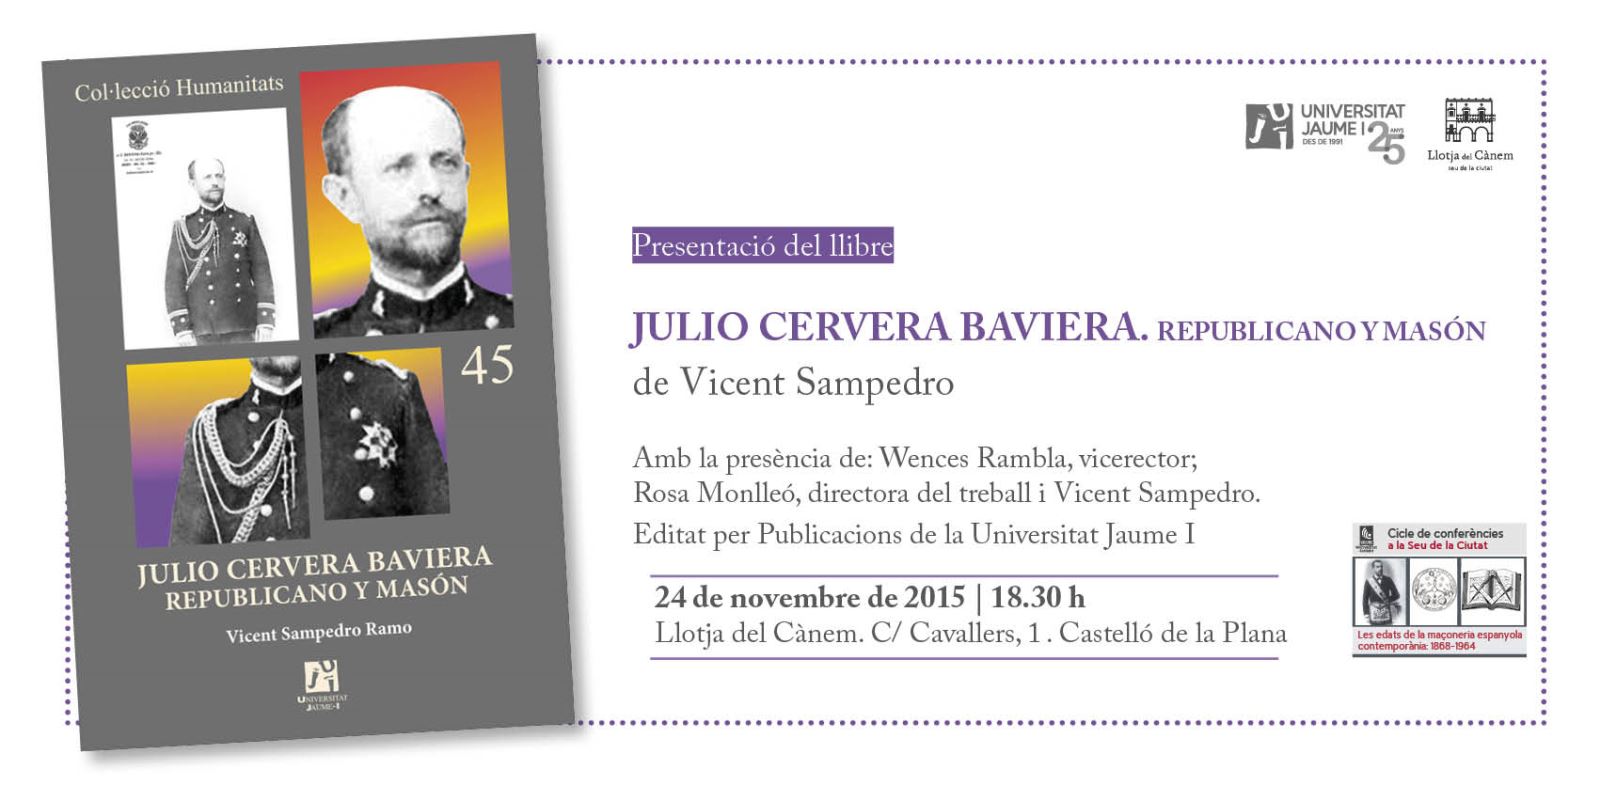 La Universitat Jaume I presenta el libro "Julio Cervera Baviera. Republicano y masón"